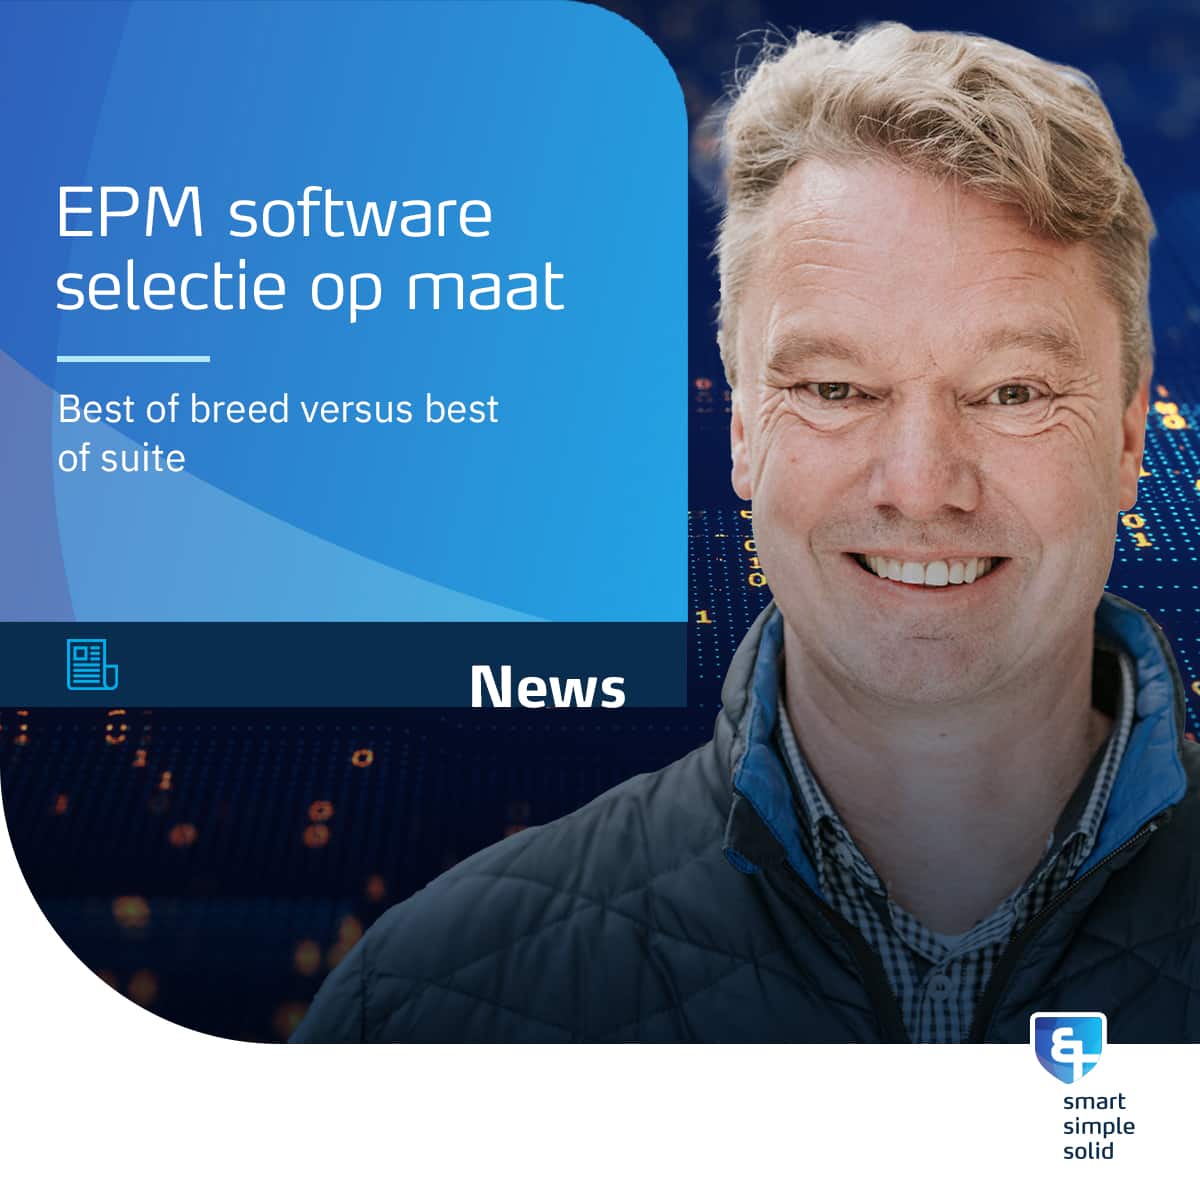 EPM softwareselectie - best of breed versus best of suite